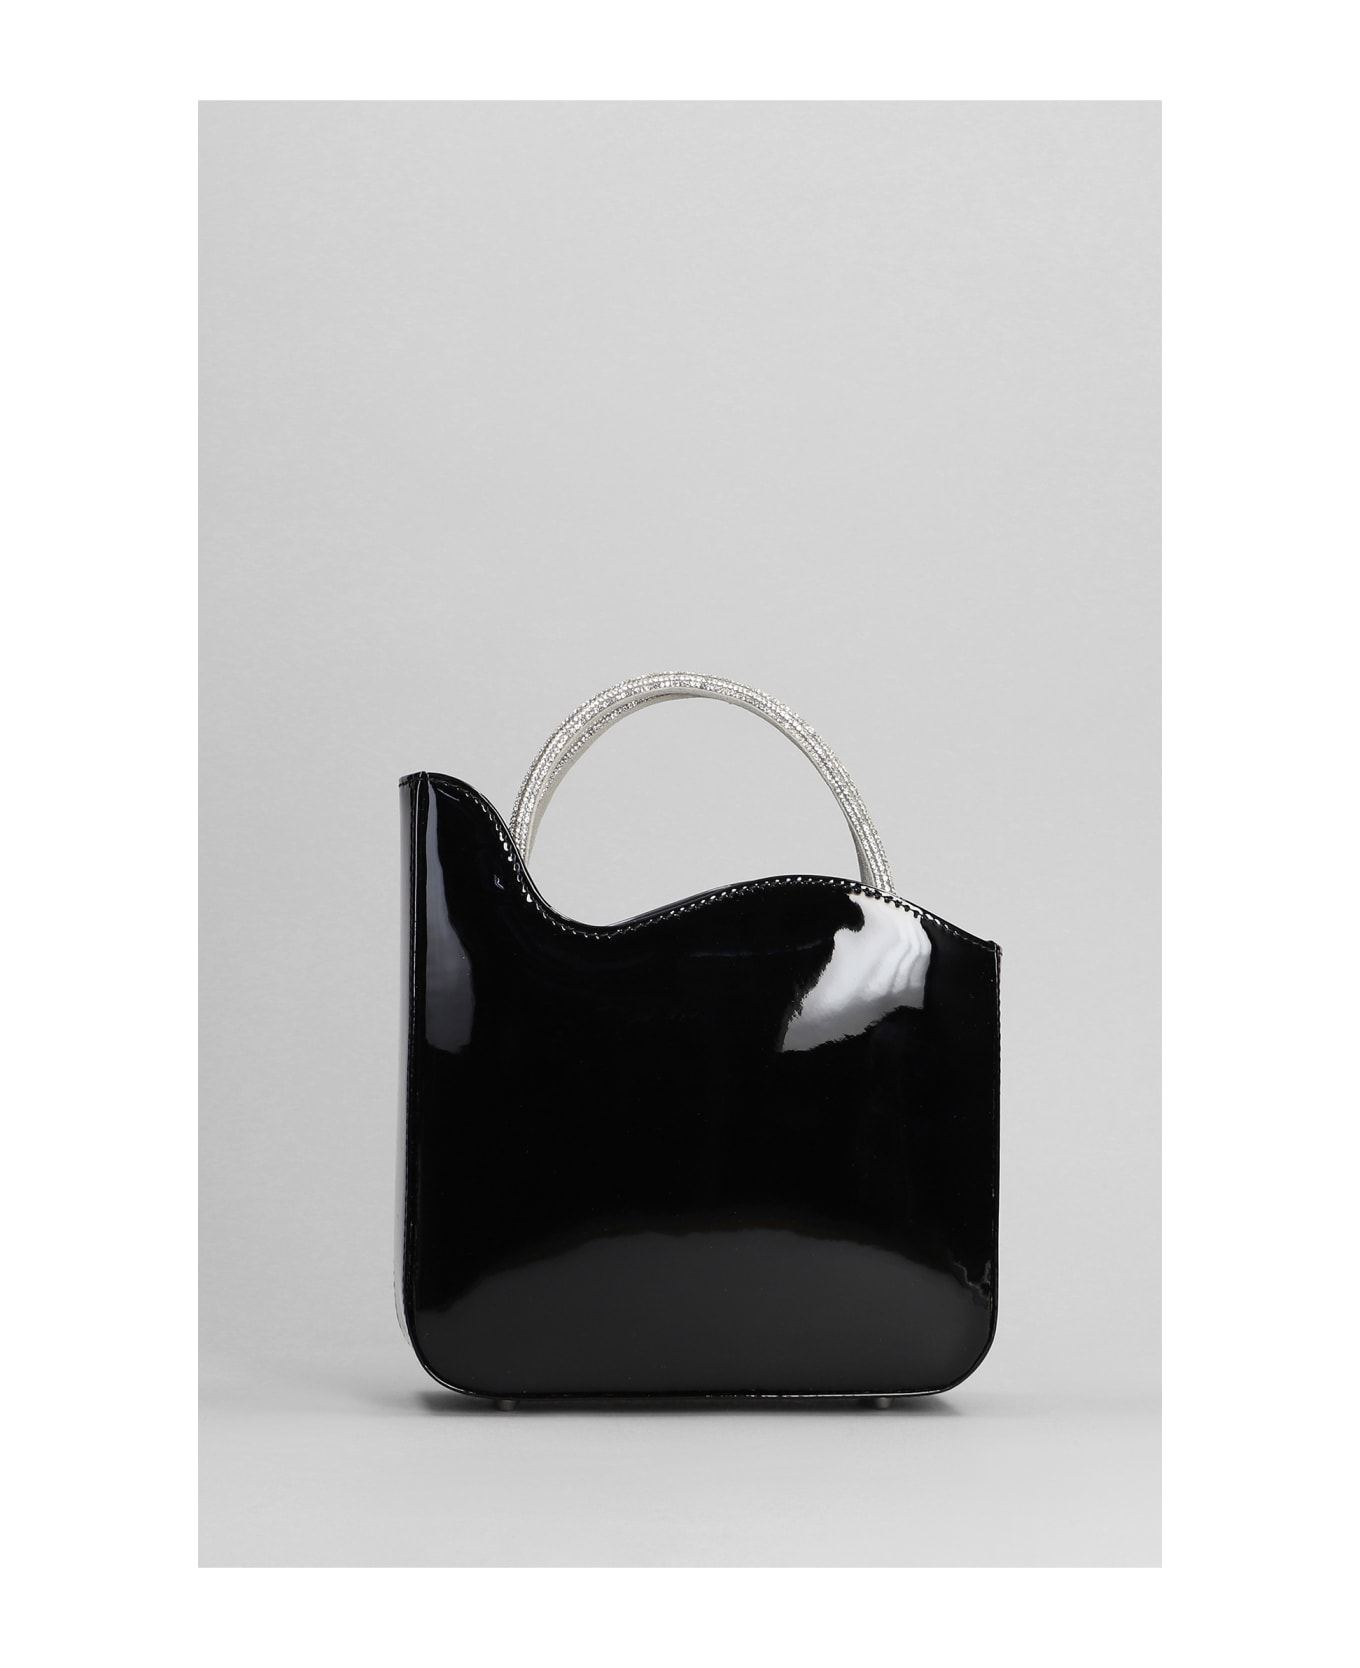 Le Silla Ivy Shoulder Bag In Black Patent Leather - black トートバッグ